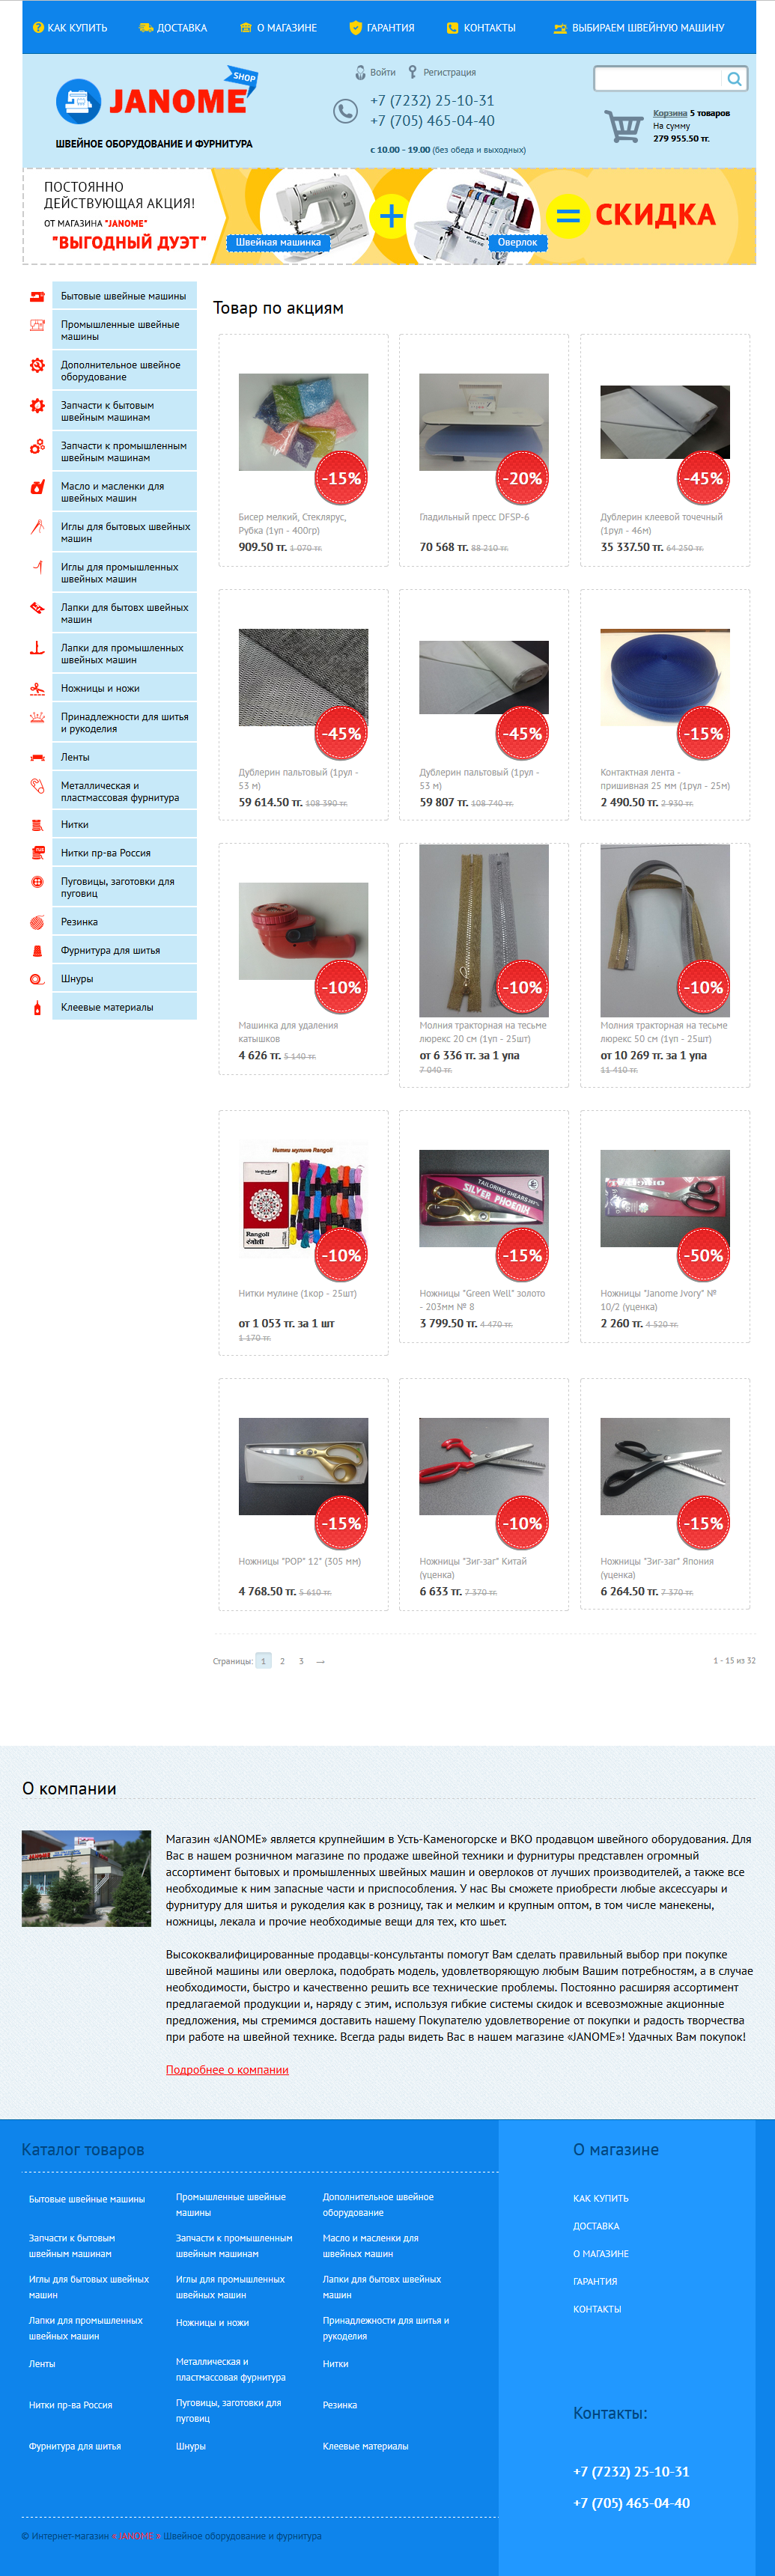 интернет-магазин швейного оборудования и фурнитуры janome-shop.kz